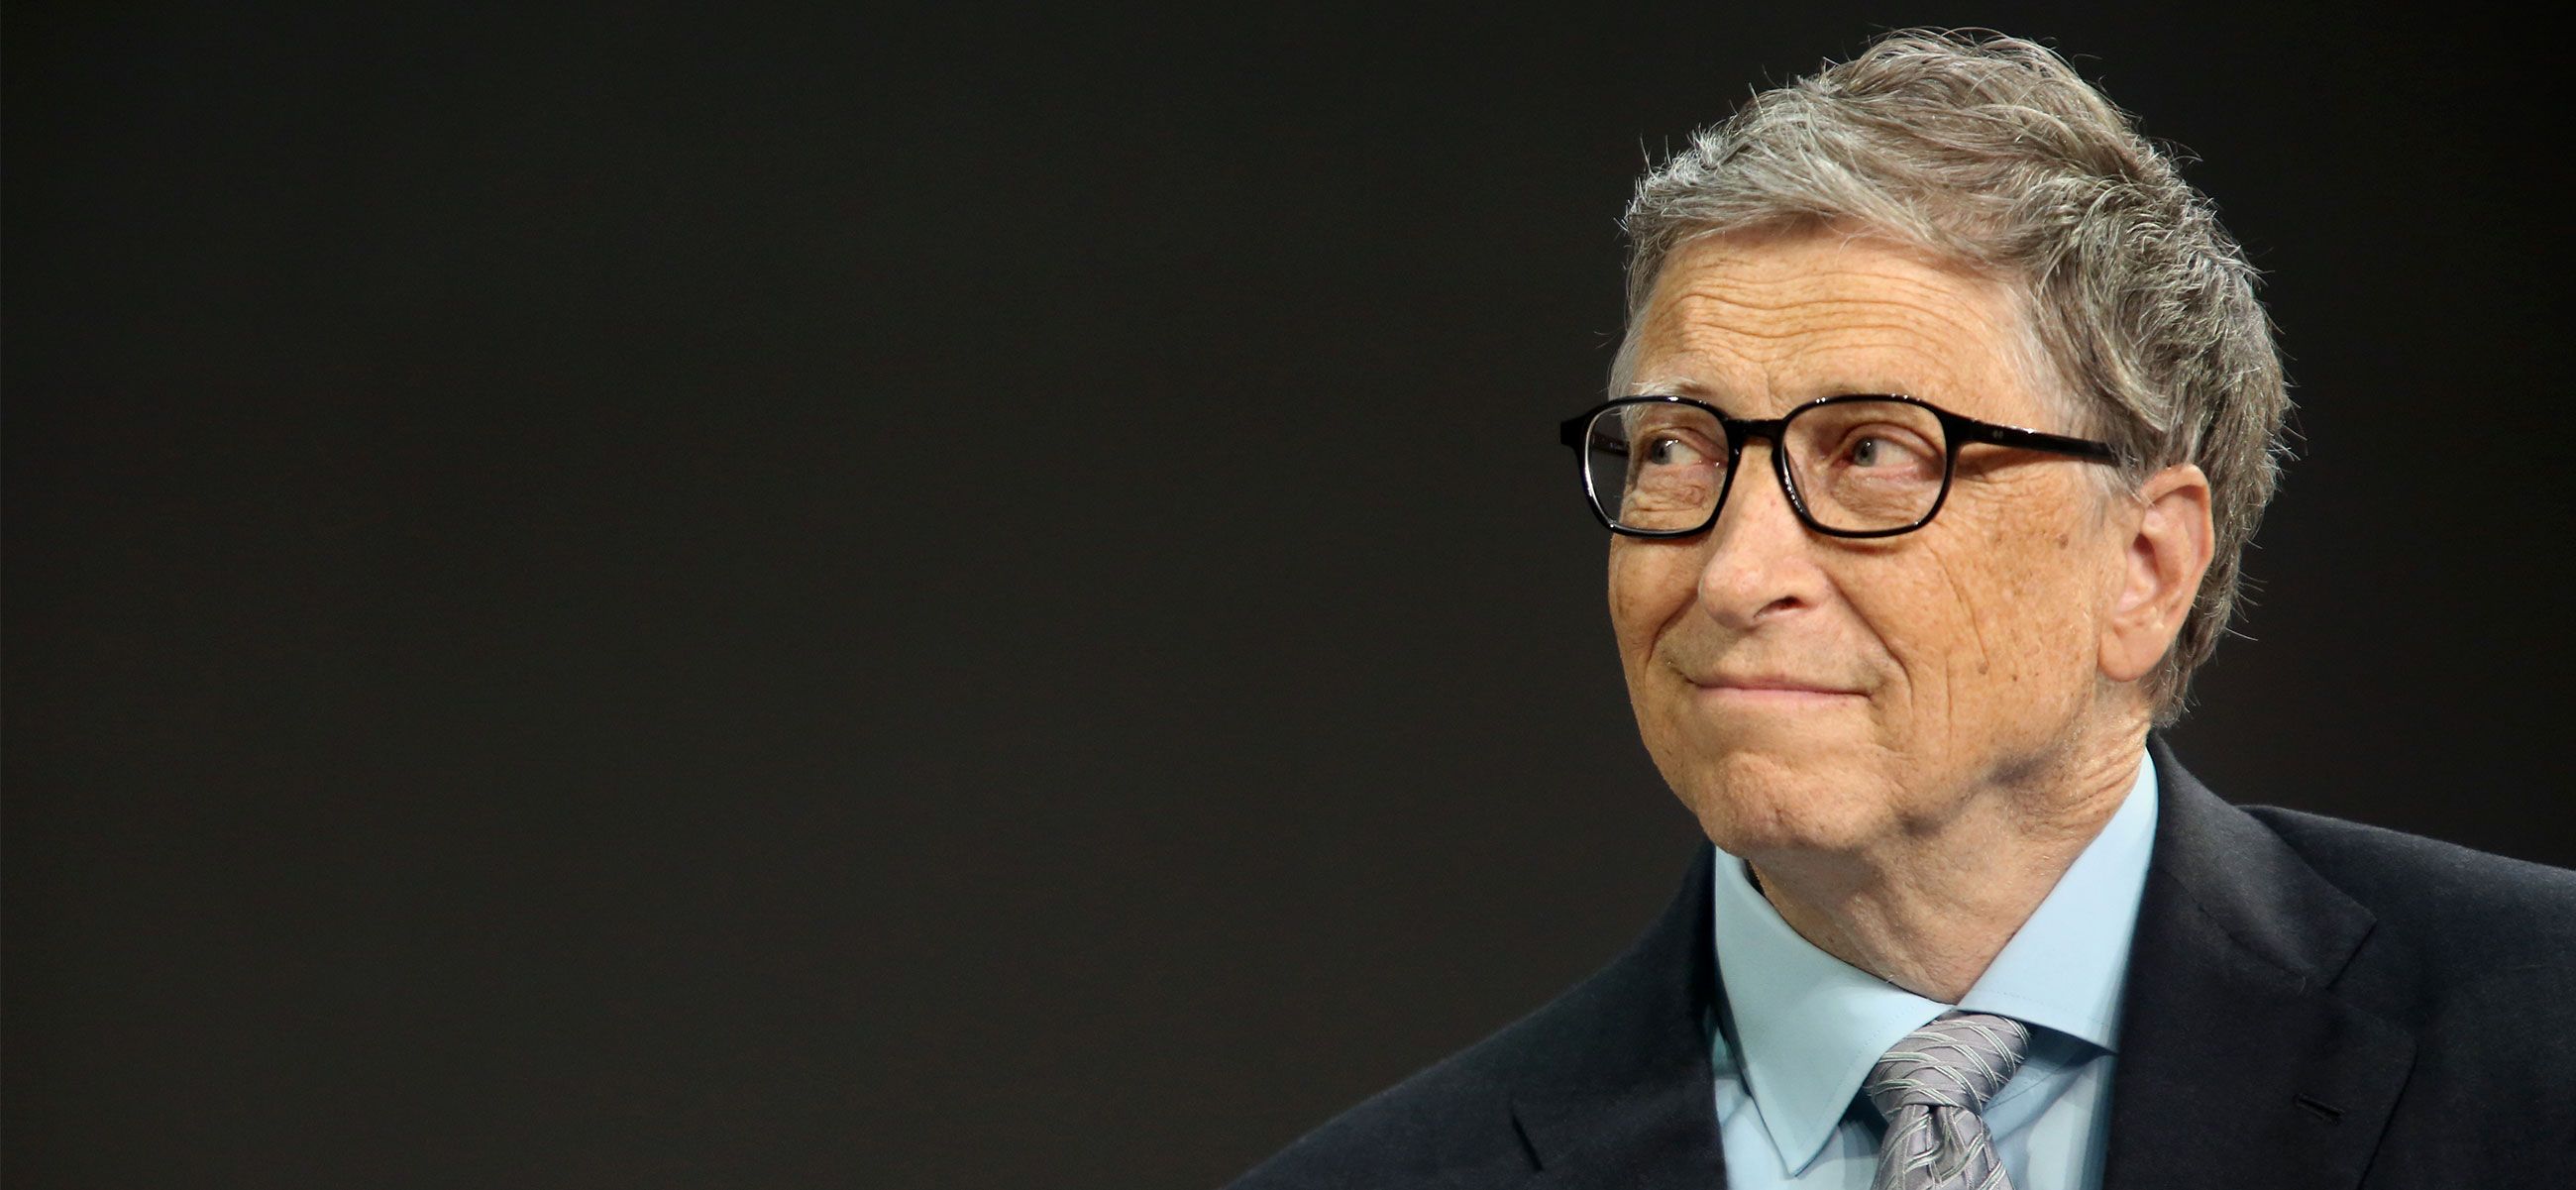 Білл Гейтс закликав вирішувати земні проблеми, а не думати про космос